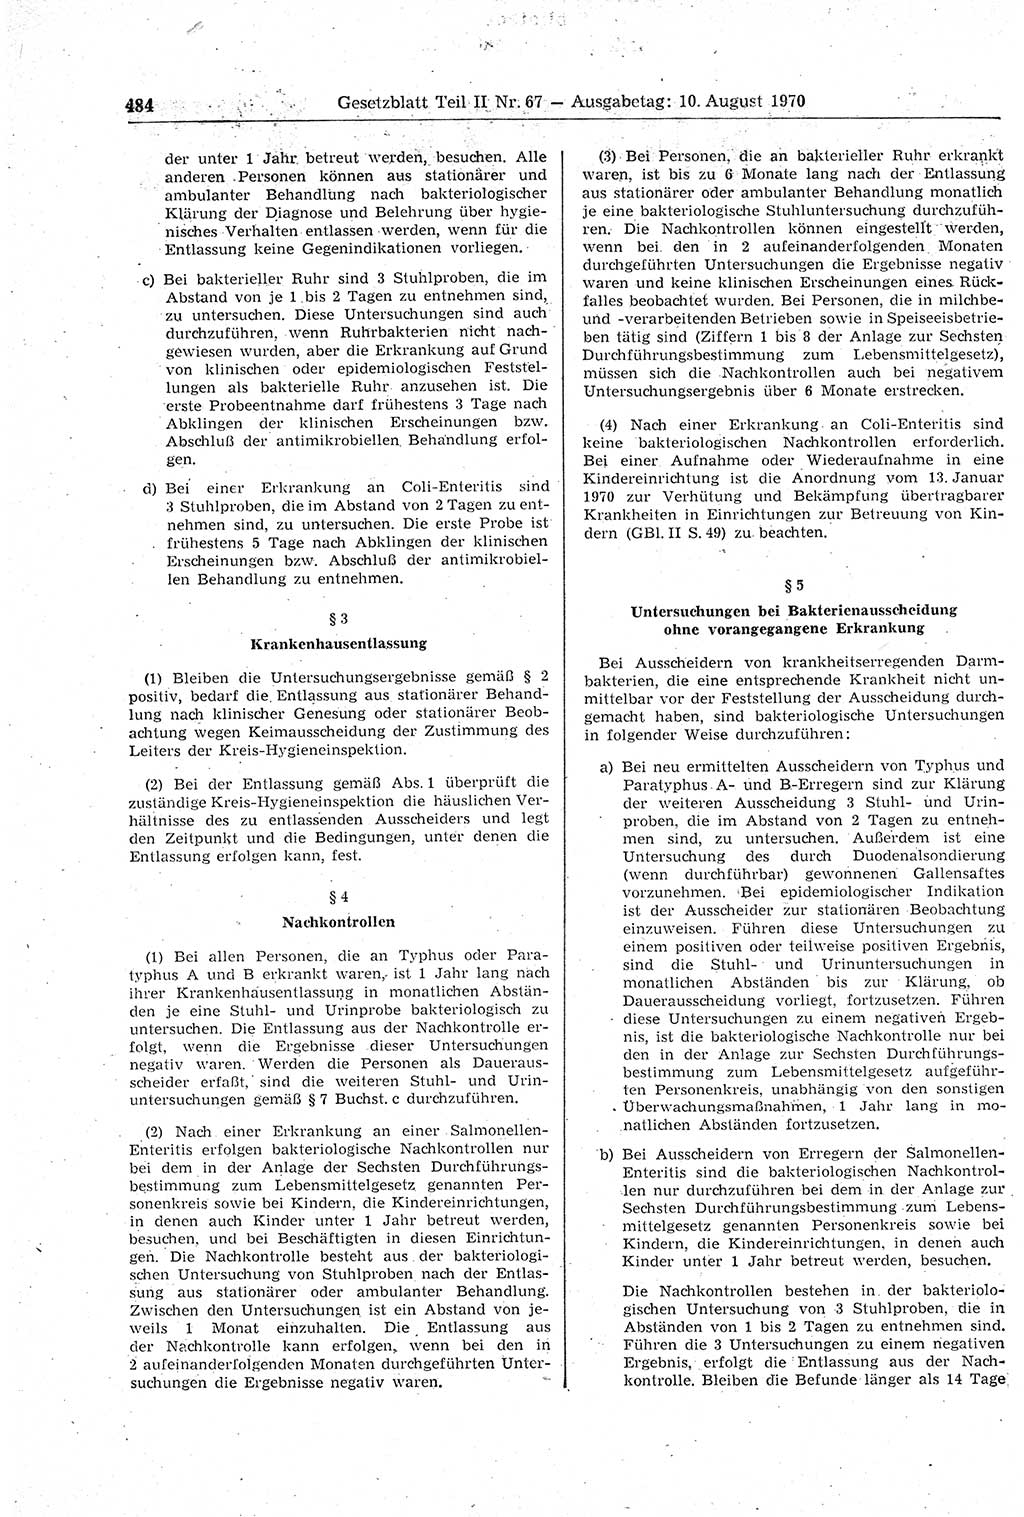 Gesetzblatt (GBl.) der Deutschen Demokratischen Republik (DDR) Teil ⅠⅠ 1970, Seite 484 (GBl. DDR ⅠⅠ 1970, S. 484)